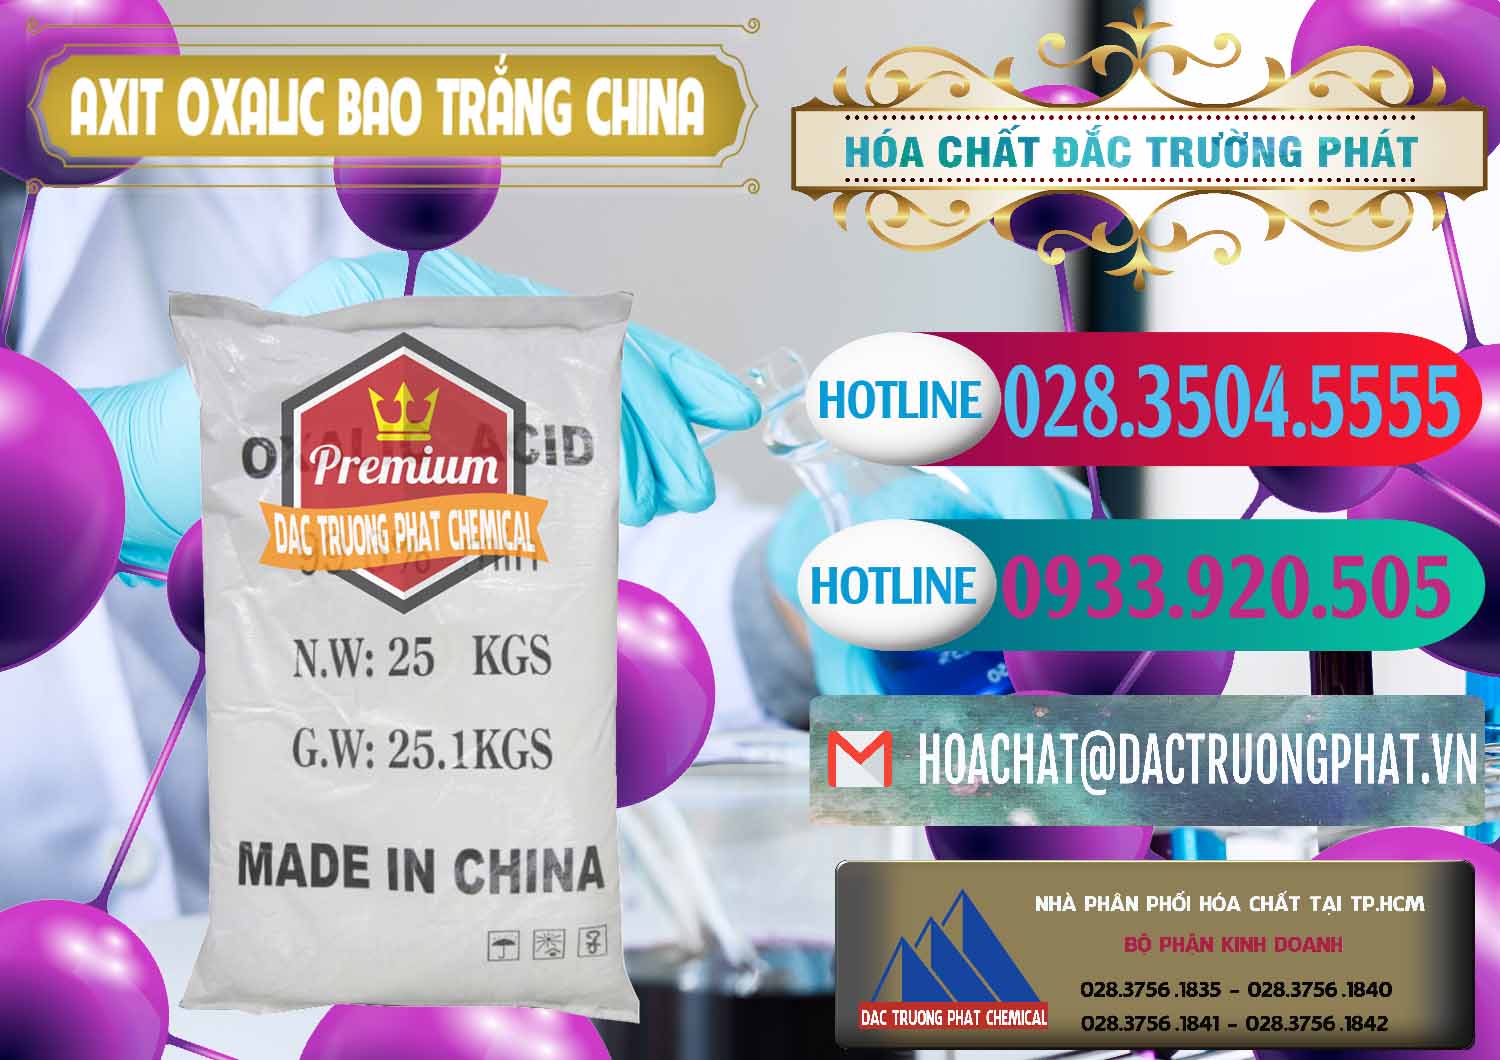 Chuyên cung ứng & bán Acid Oxalic – Axit Oxalic 99.6% Bao Trắng Trung Quốc China - 0270 - Phân phối và nhập khẩu hóa chất tại TP.HCM - truongphat.vn